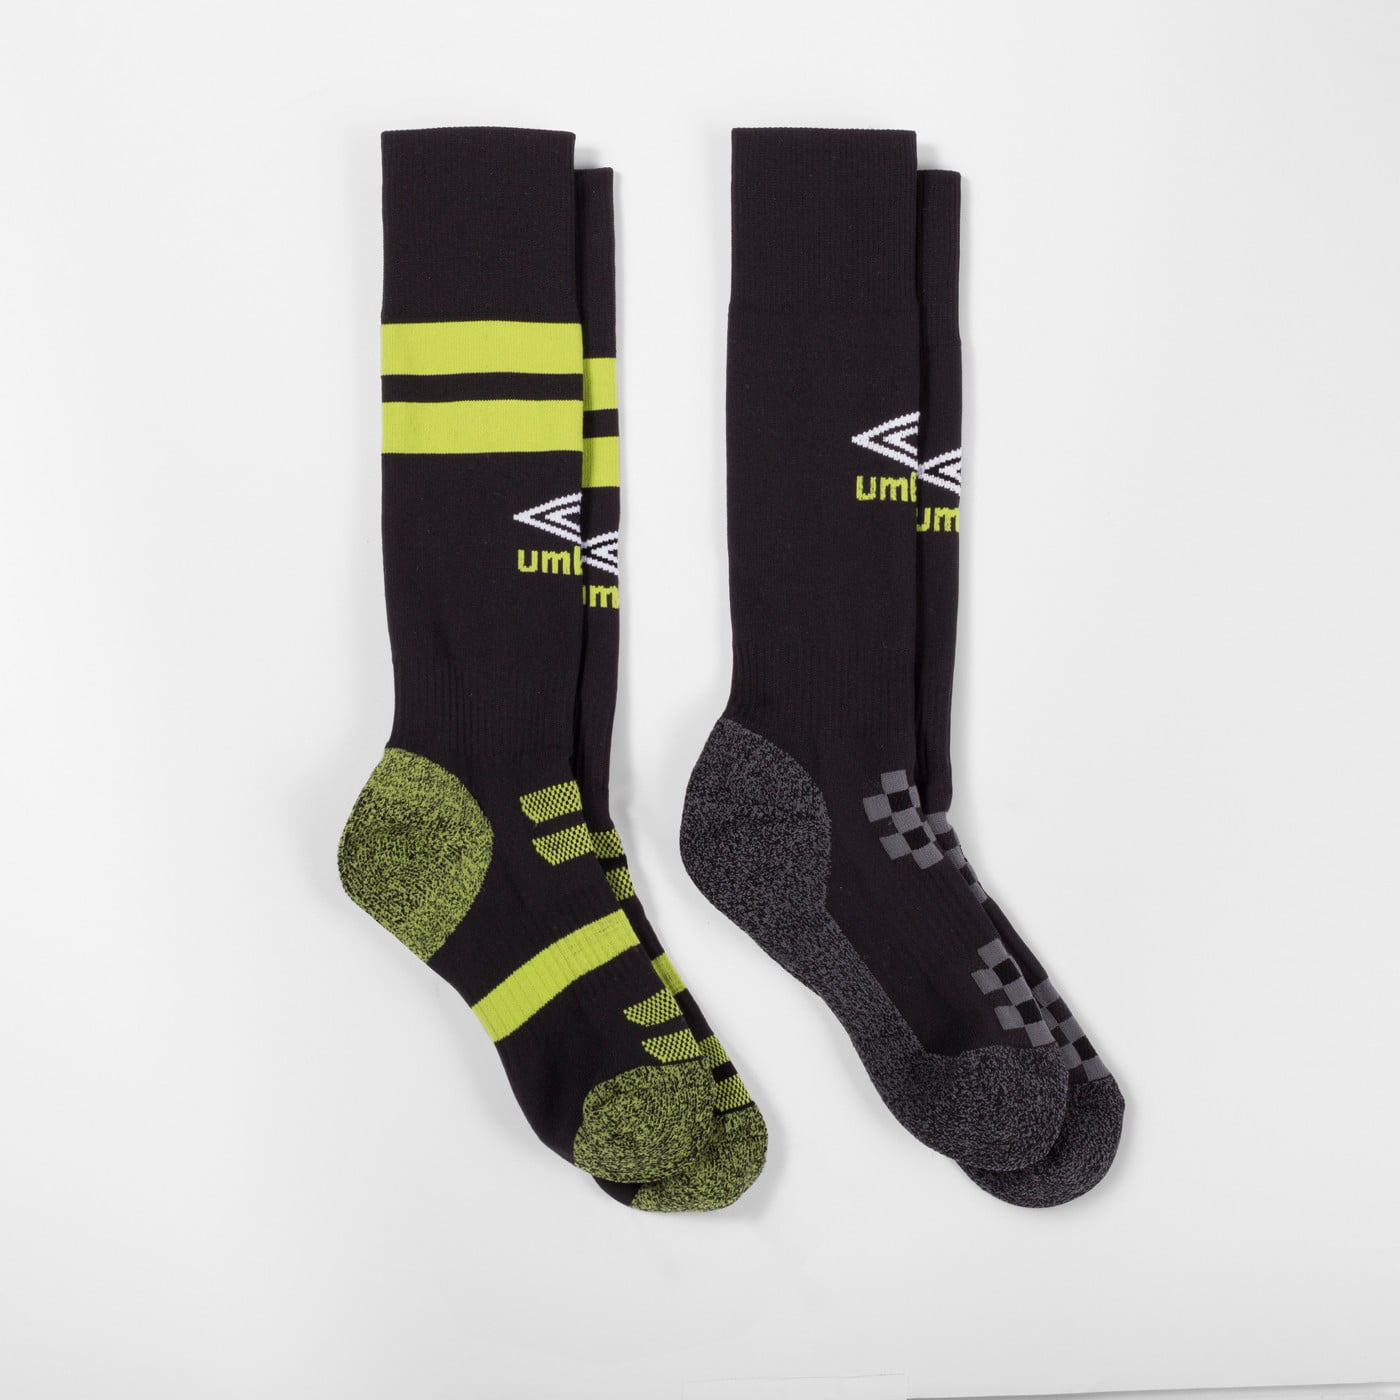 Umbro Soccer Socks Size Chart